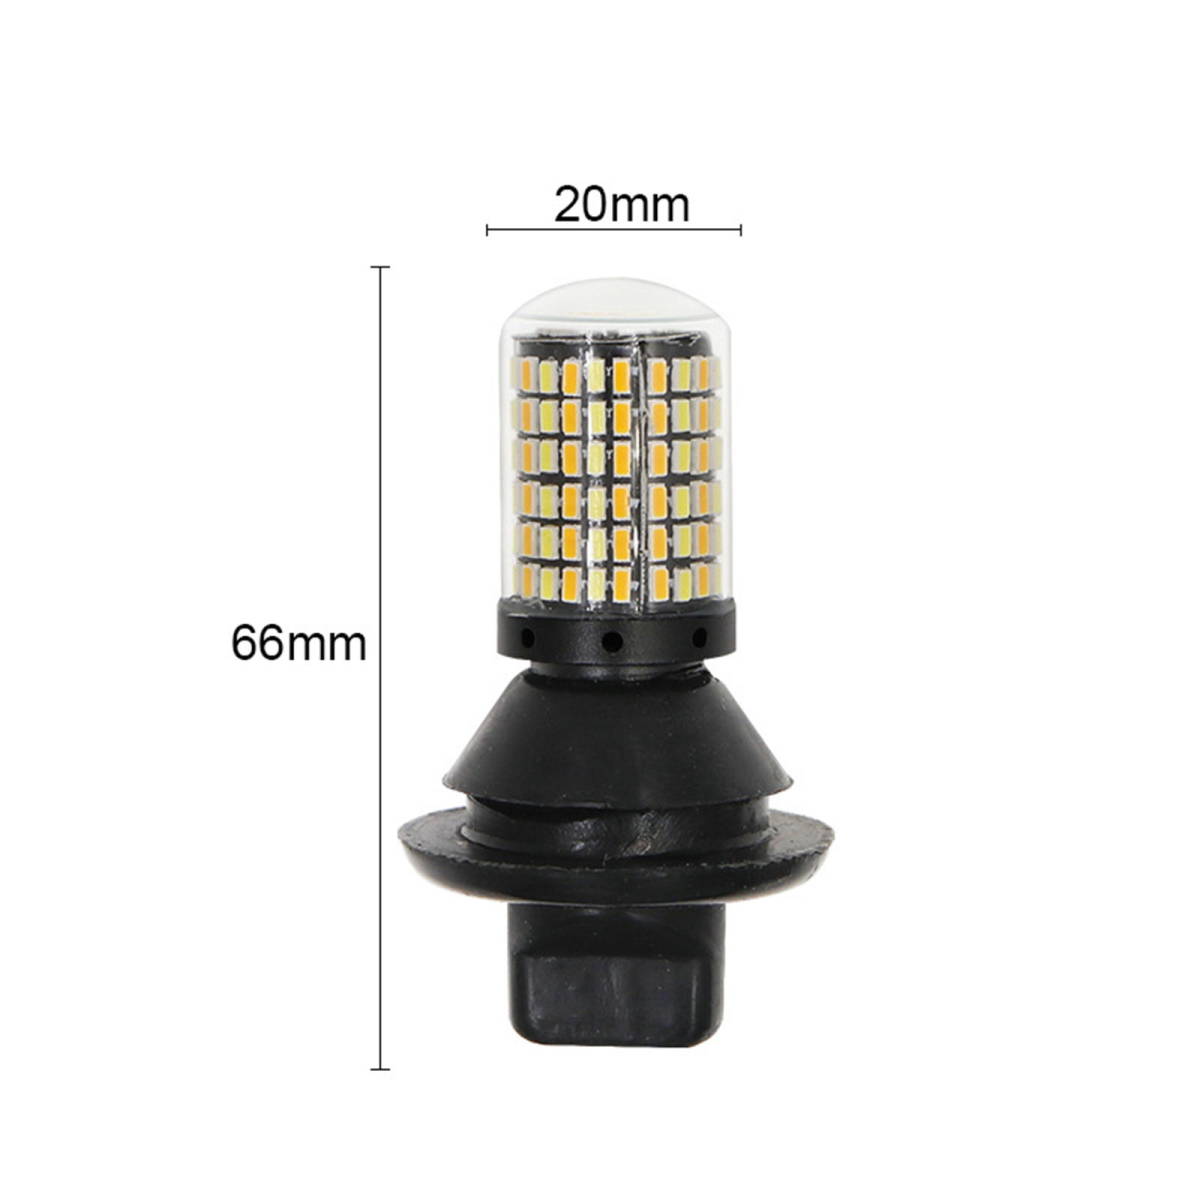 ウィンカーポジションキット LED ウインカー 抵抗付き S25 ピンチ部違い ホワイト&アンバー ツインカラー 爆光 168連LEDチップ B_画像4